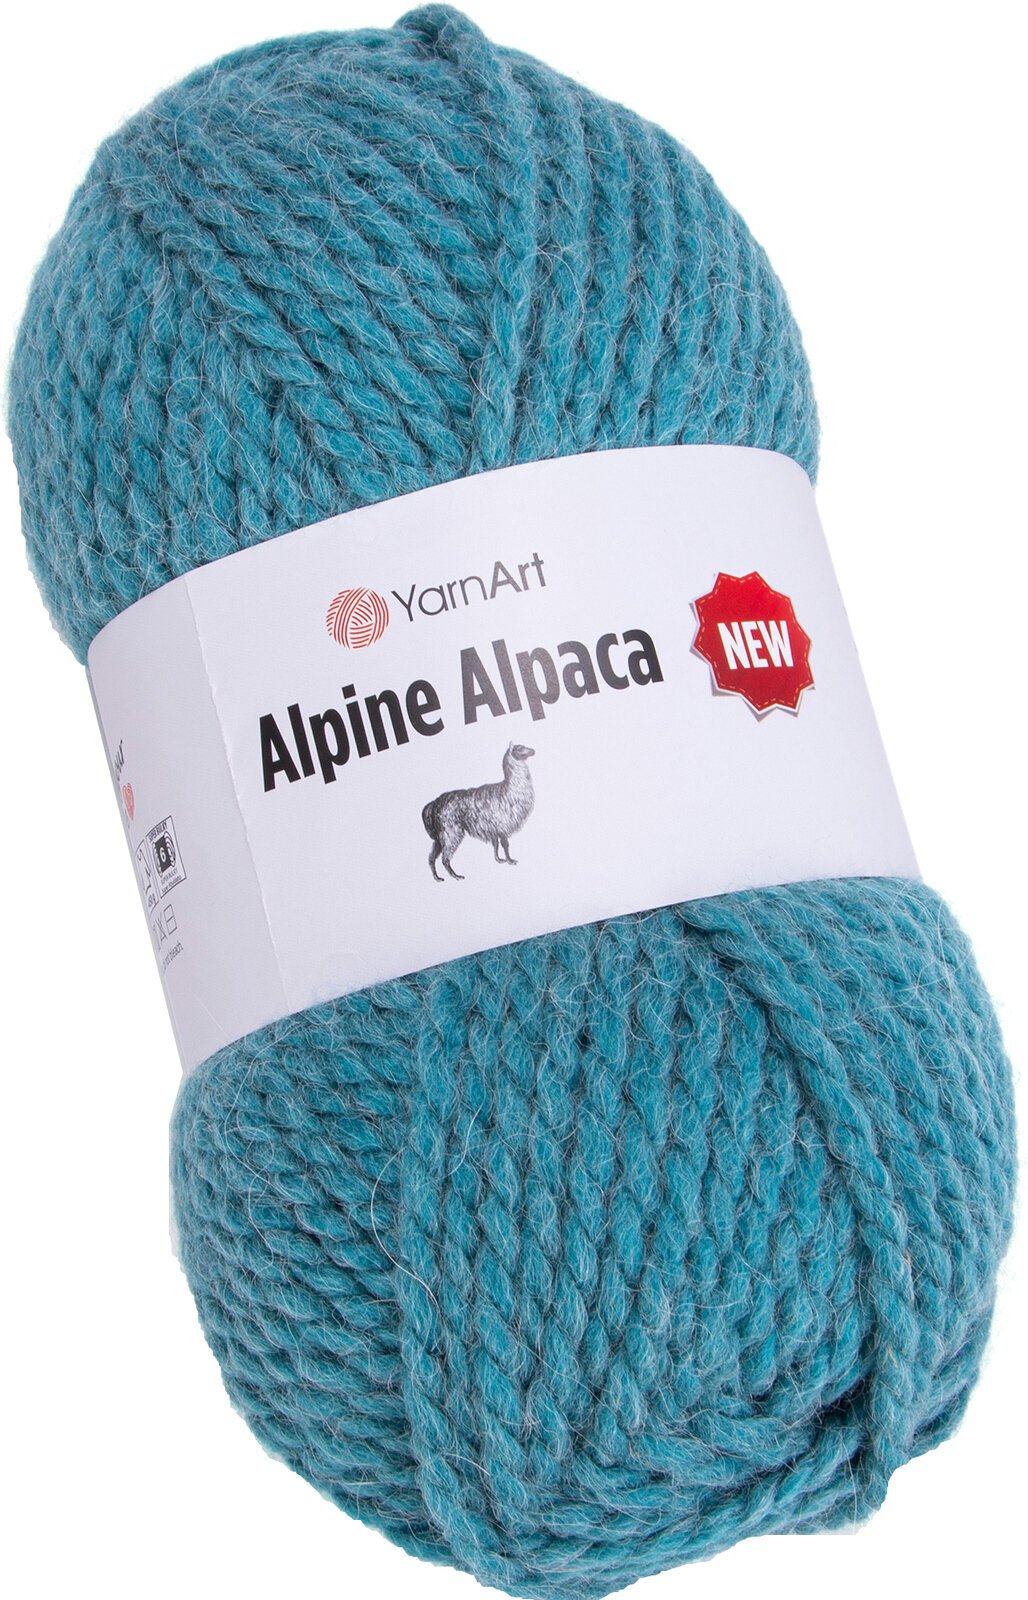 Strikkegarn Yarn Art Alpine Alpaca New 1450 Strikkegarn